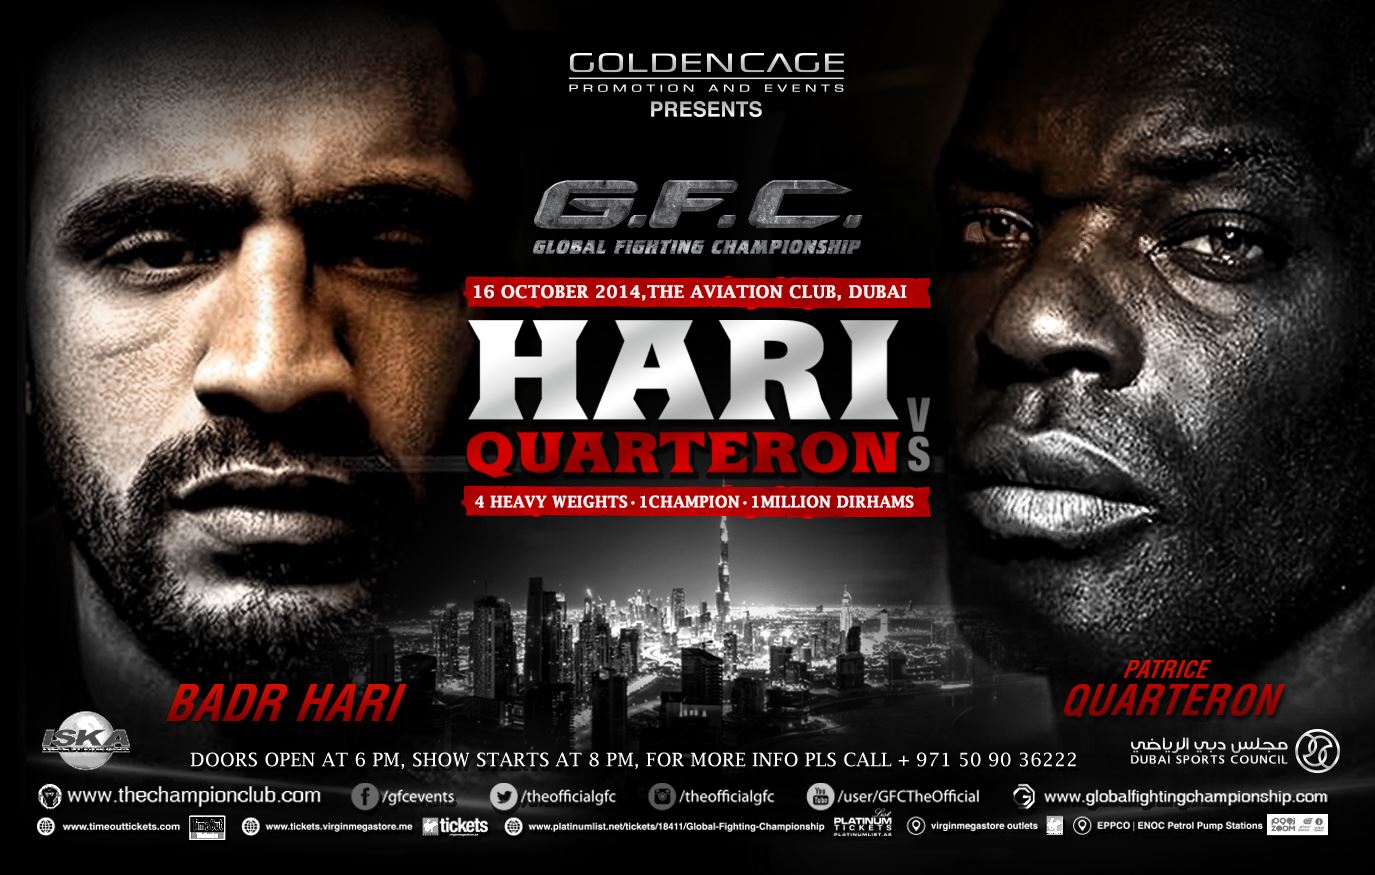 gfc4-Badr Hari vs Patrice Quarterton